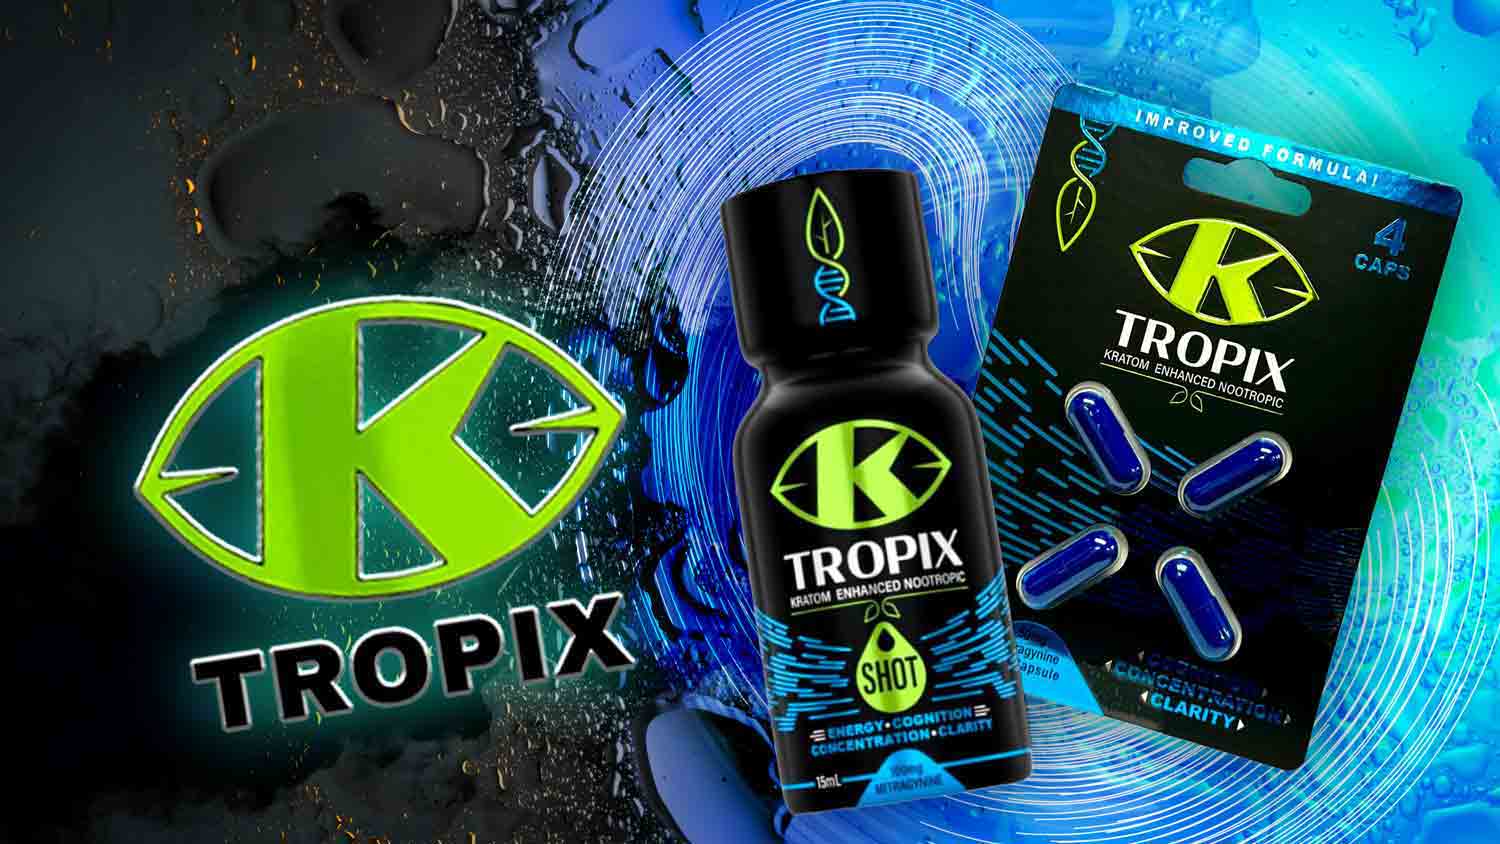 K Tropix Kratom Extract Bundle